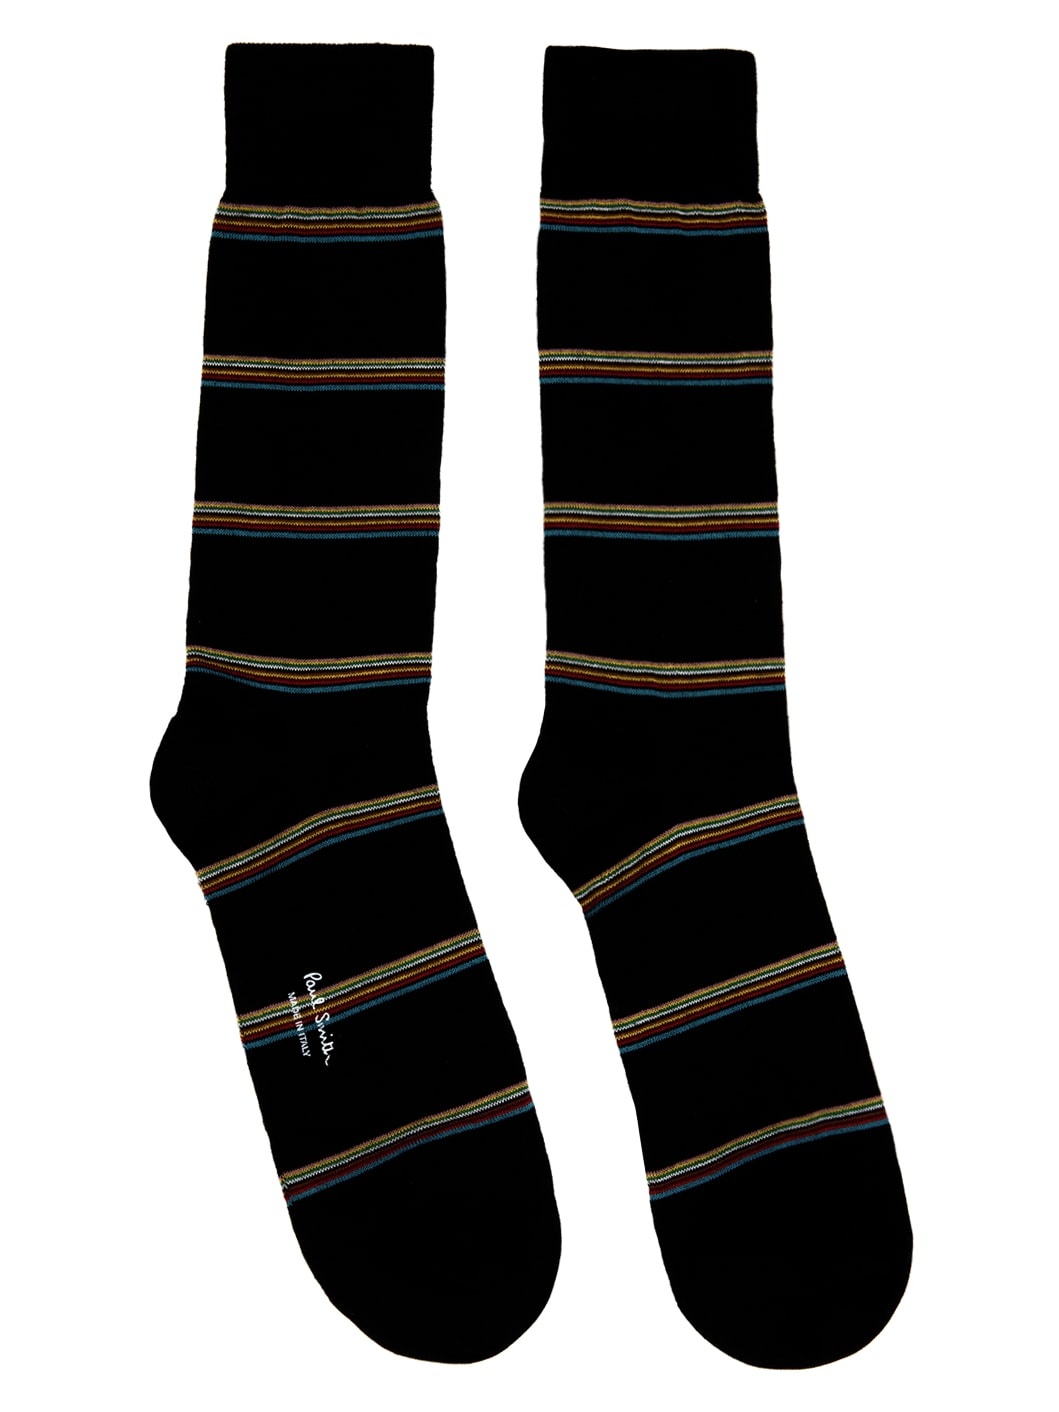 Three-Pack Multicolor Socks - 4